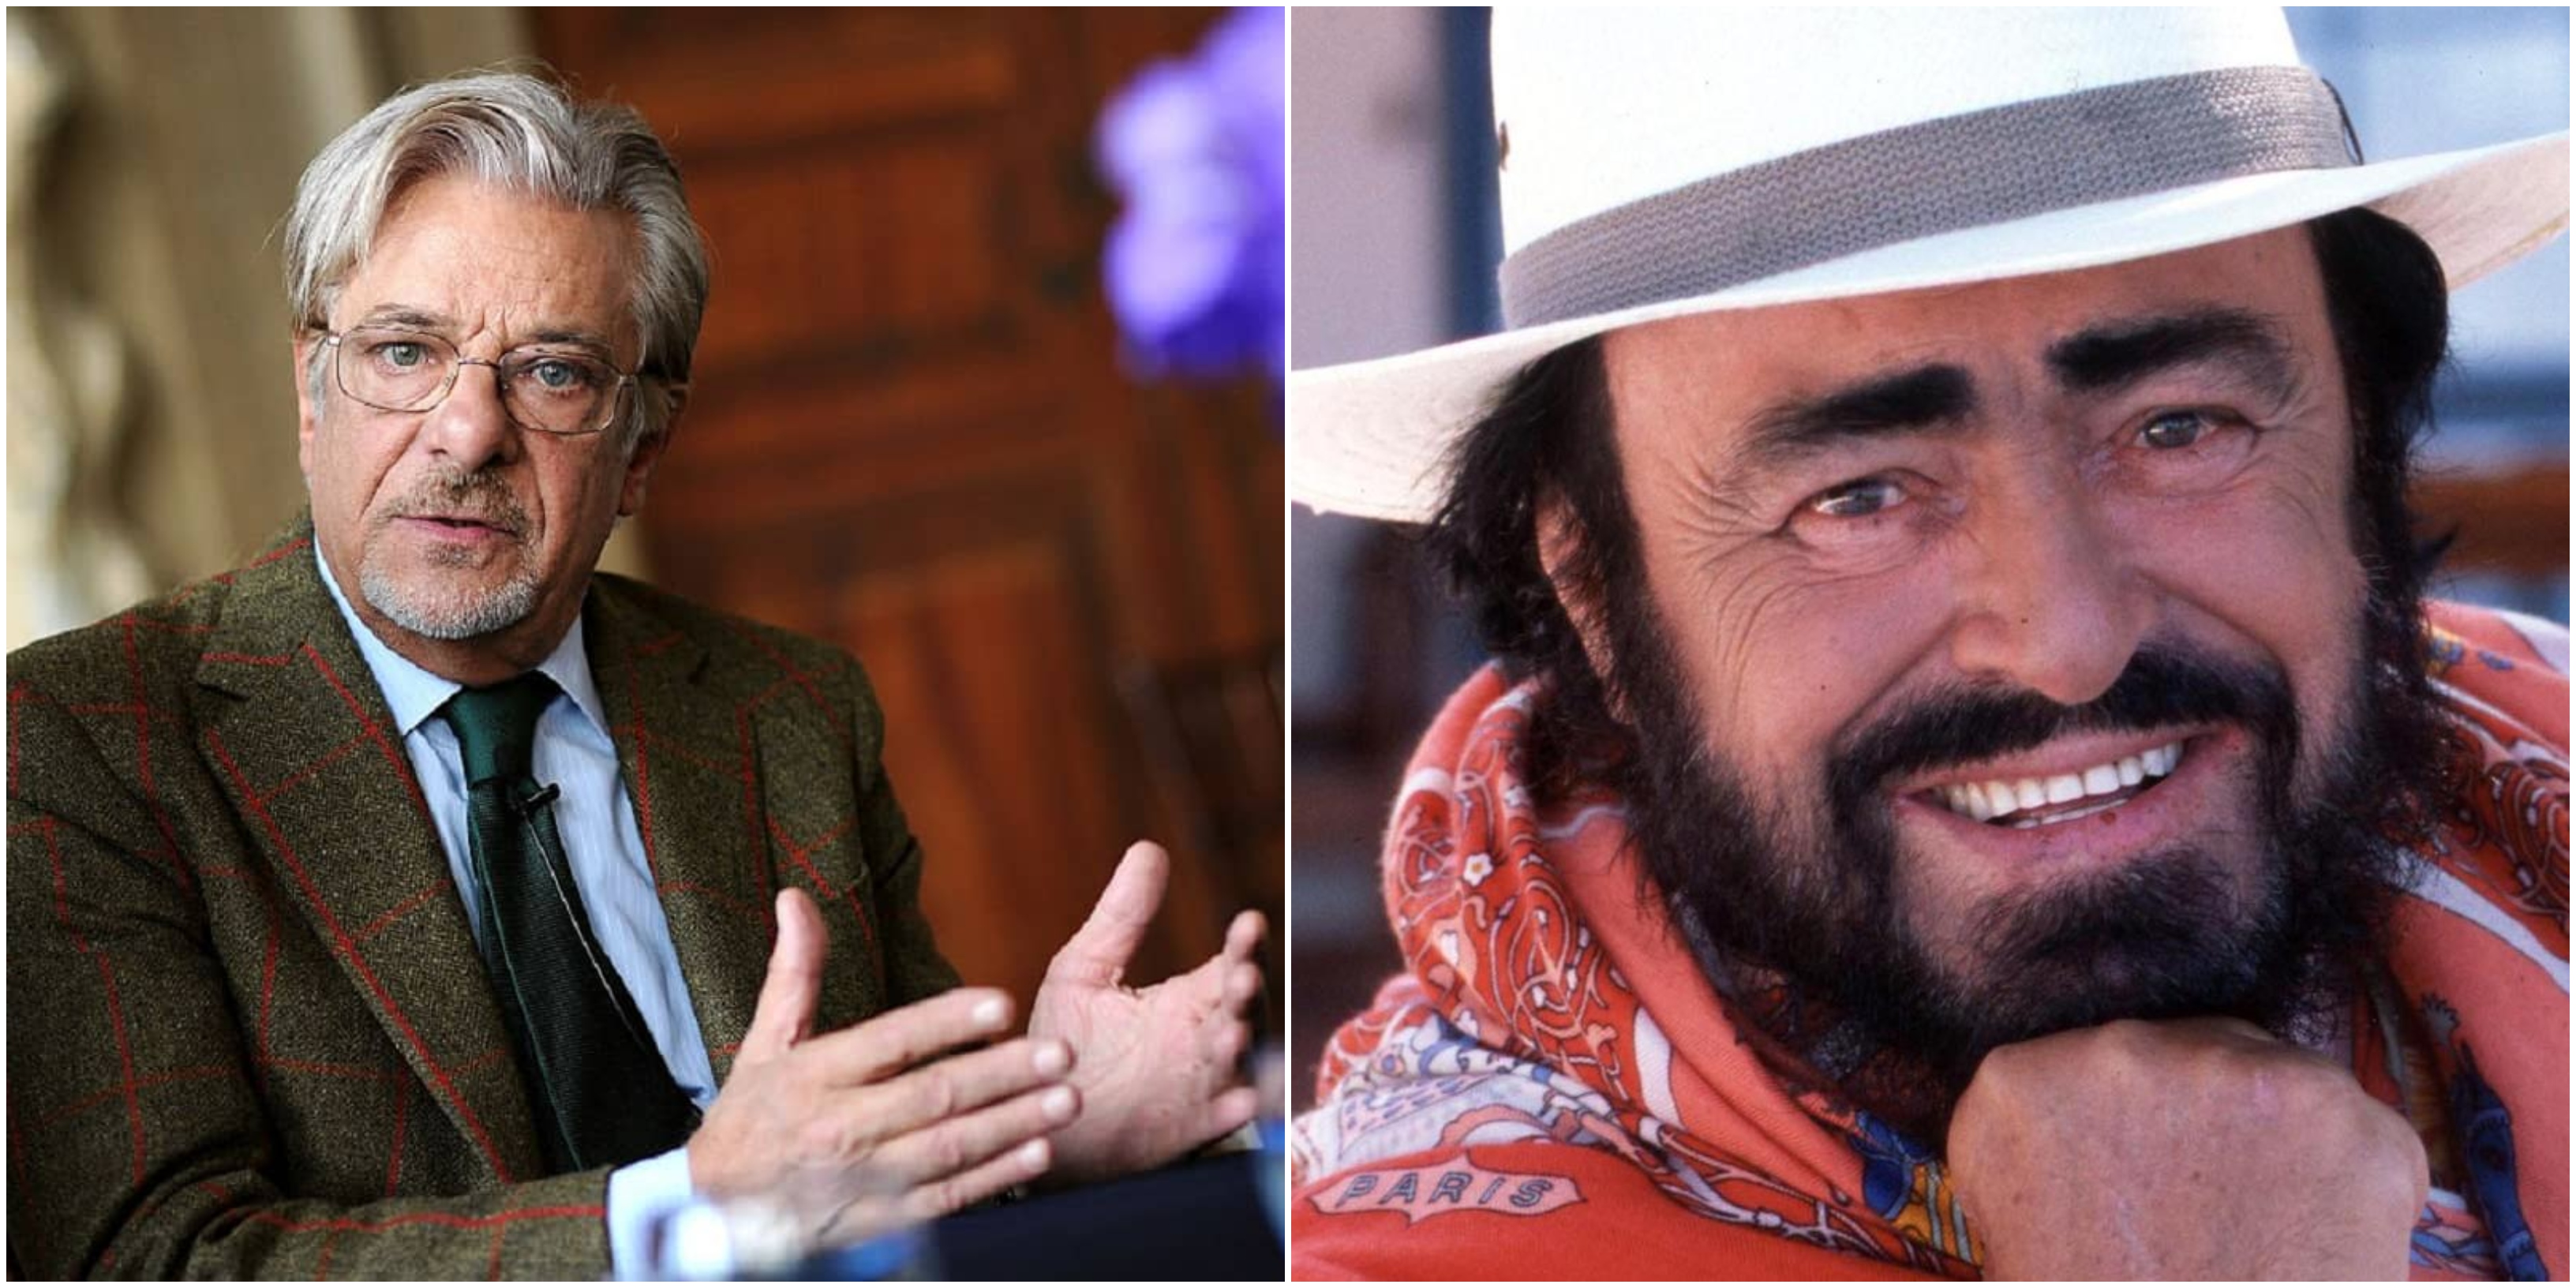 Giancarlo Giannini e Luciano Pavarotti nella storia di Hollywood: avranno una stella sulla Walk of Fame